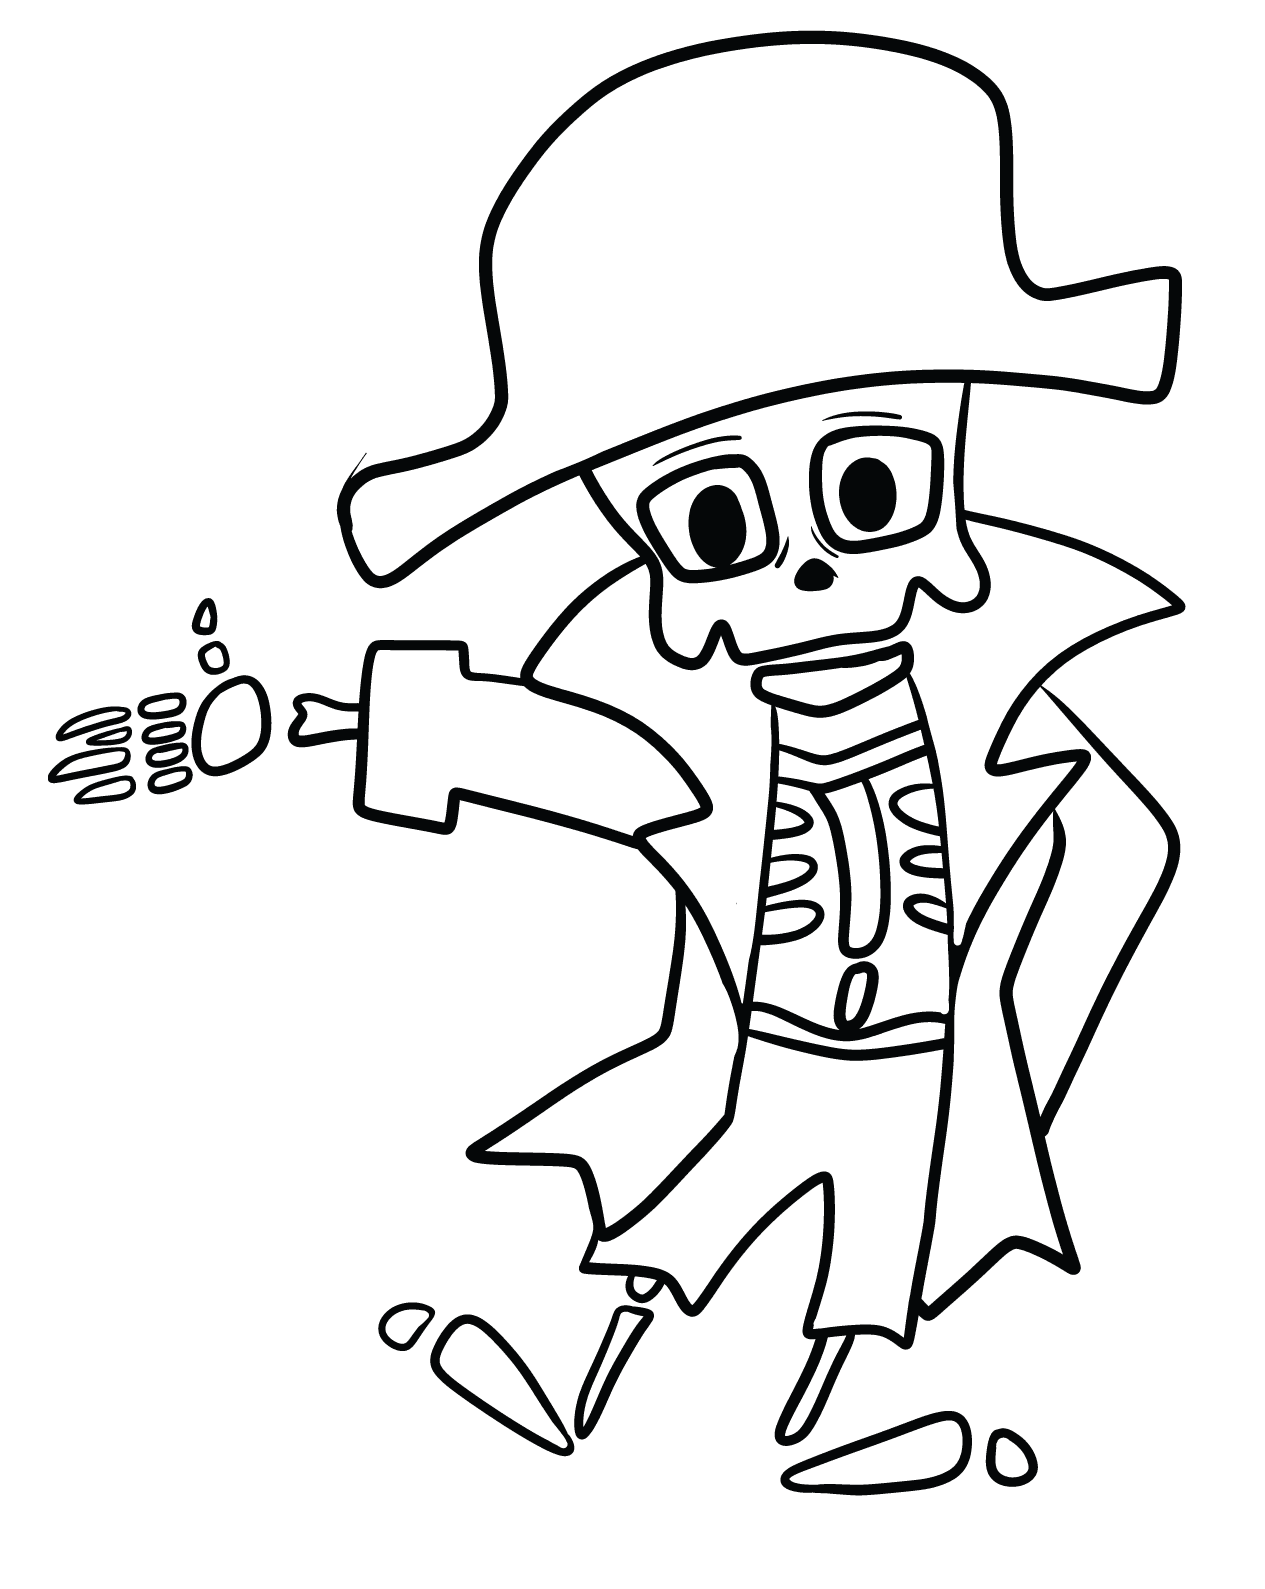 Esqueleto de pirata para imprimir do pirata